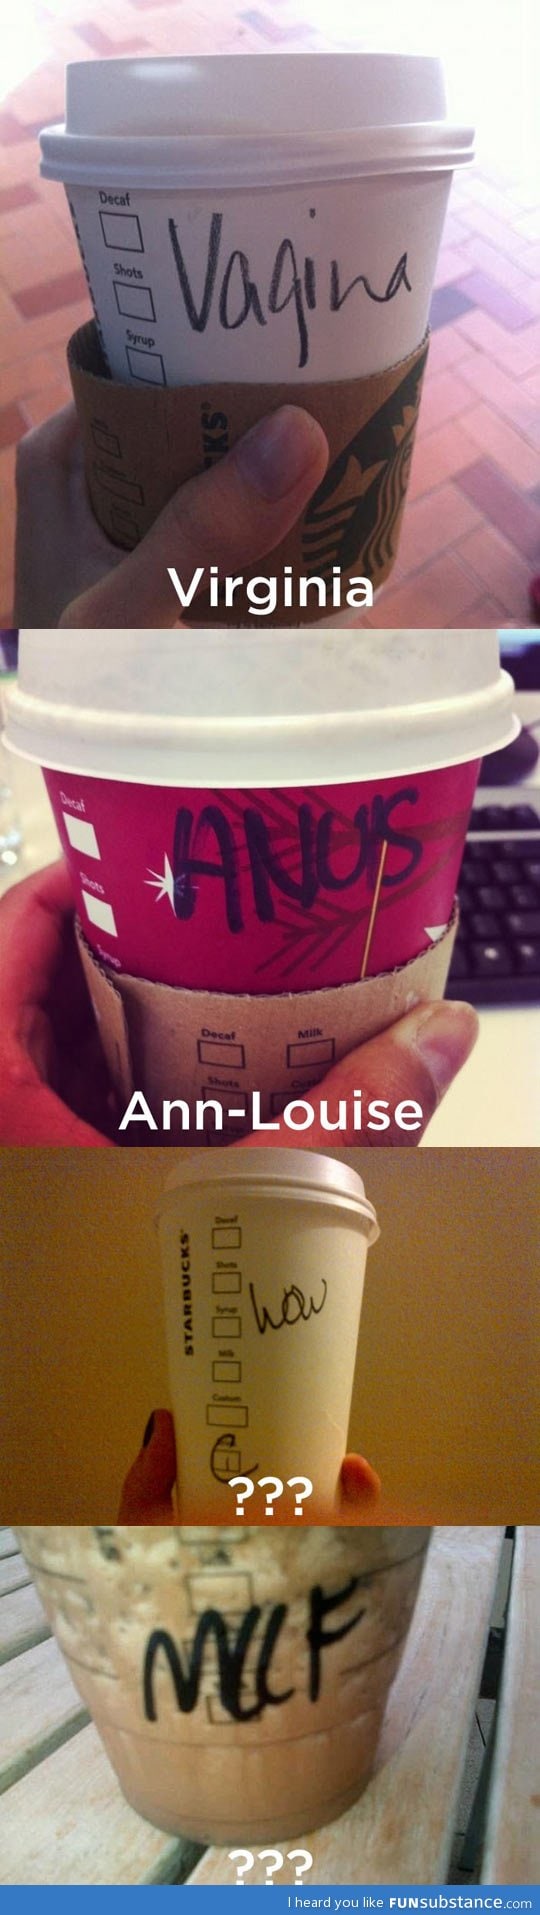 Starbucks can't spell names